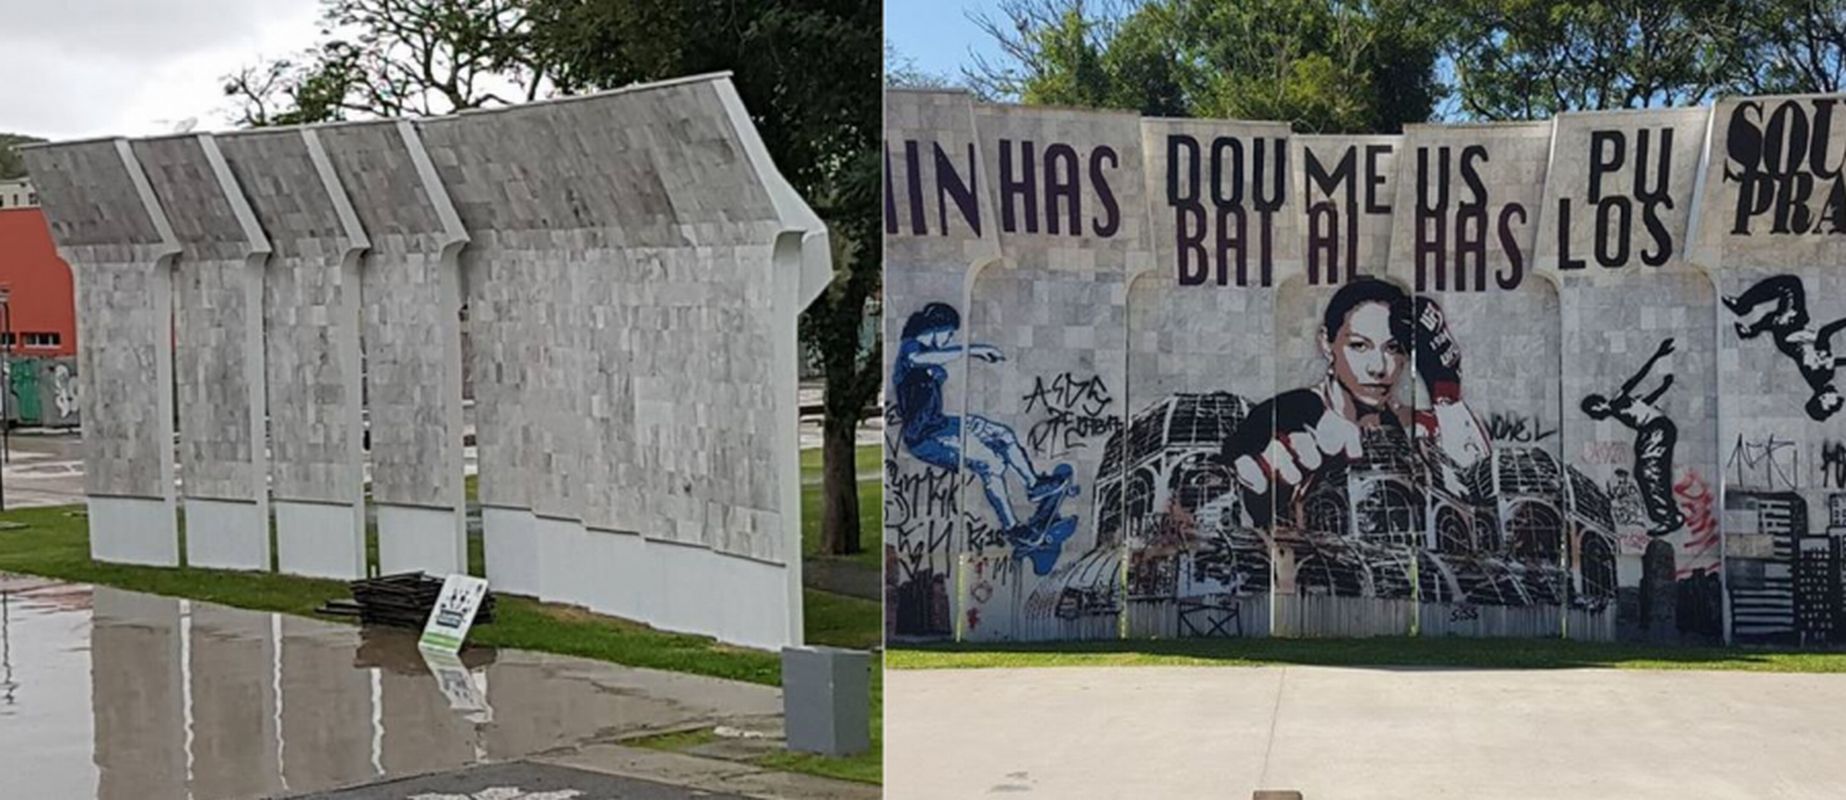 Imagens comparam antes e depois da 'limpeza' na concha acústica da Praça do Atlético. Foto: Reprodução